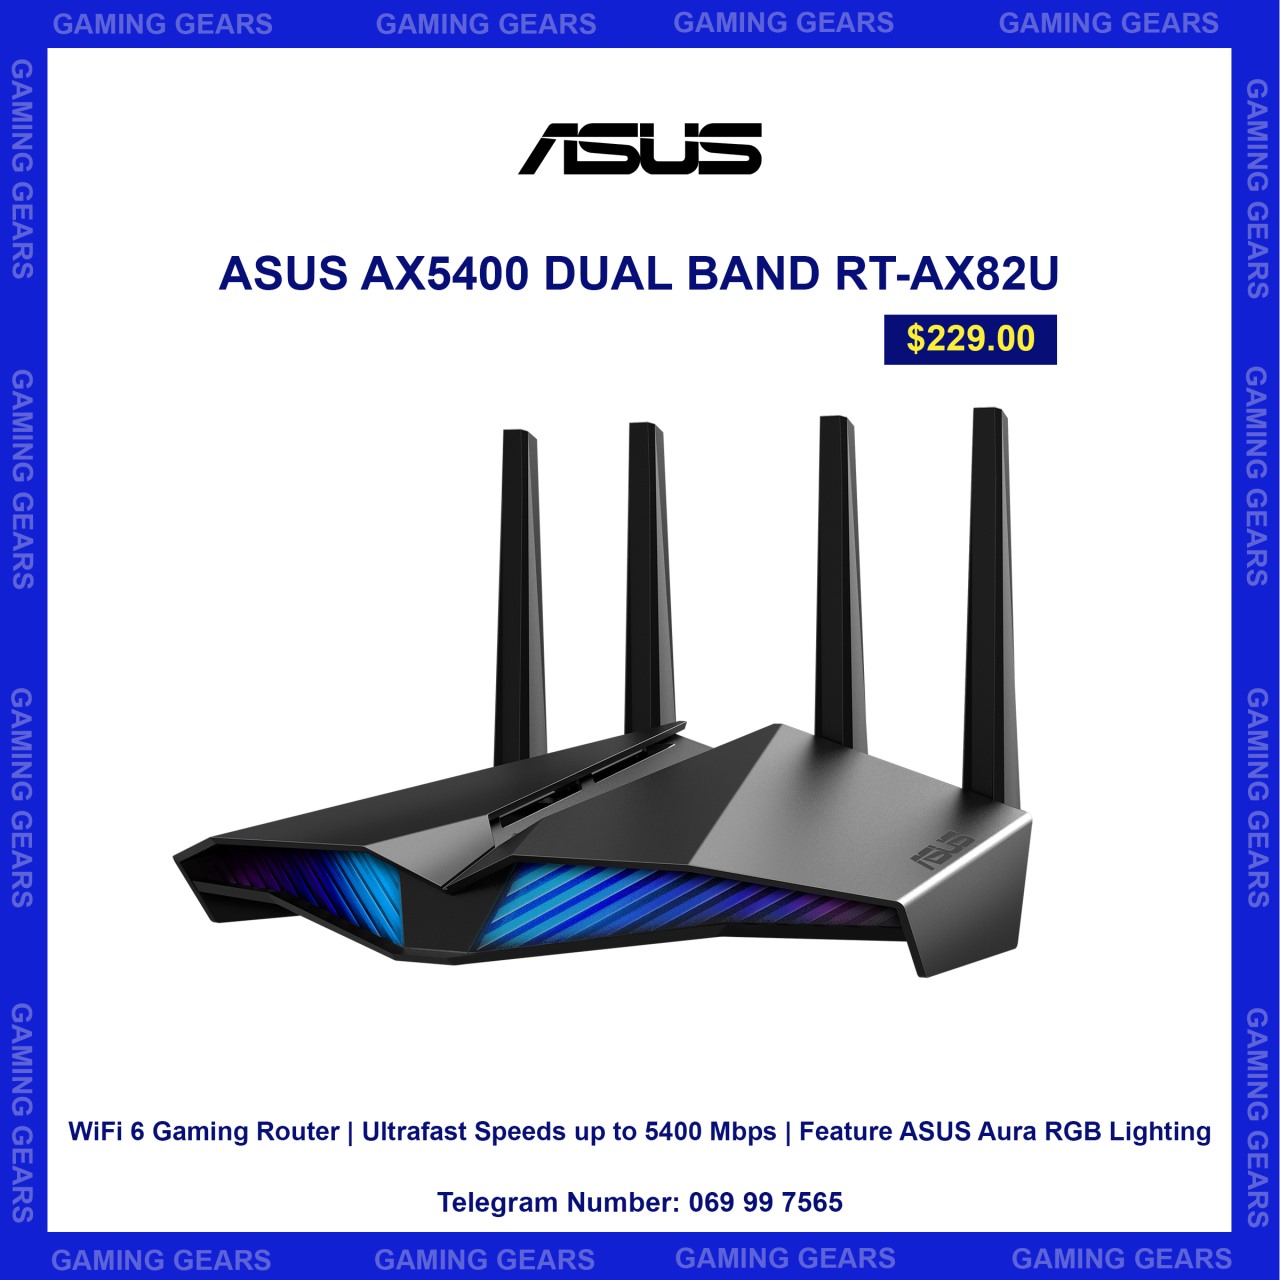 Asus AX5400 Dual Band RT-AX82U